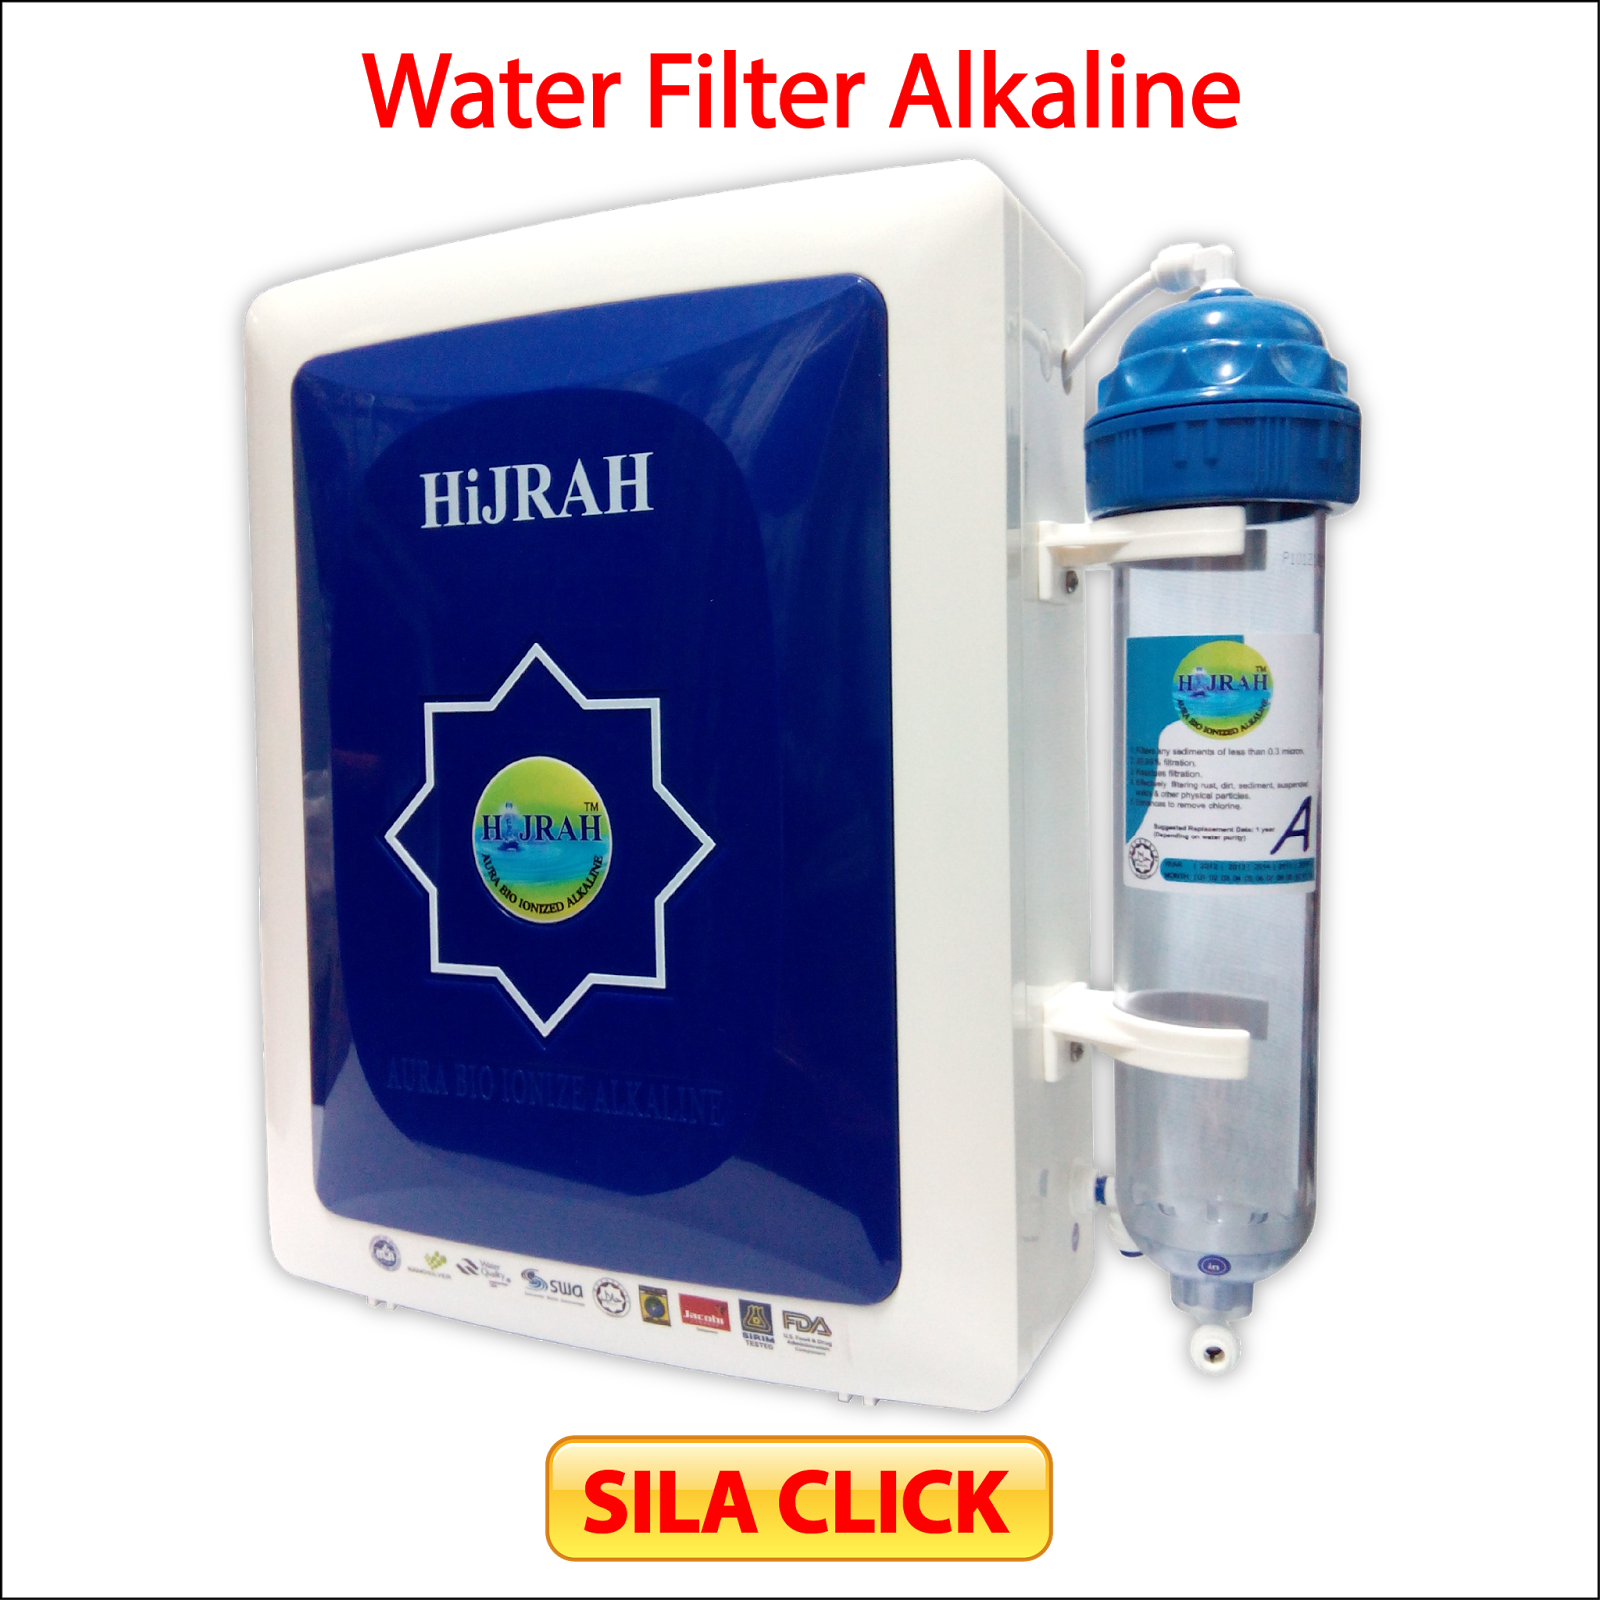 http://produkpenapisairhijrah.blogspot.com/p/hijrah-water-filter-alkaline.html